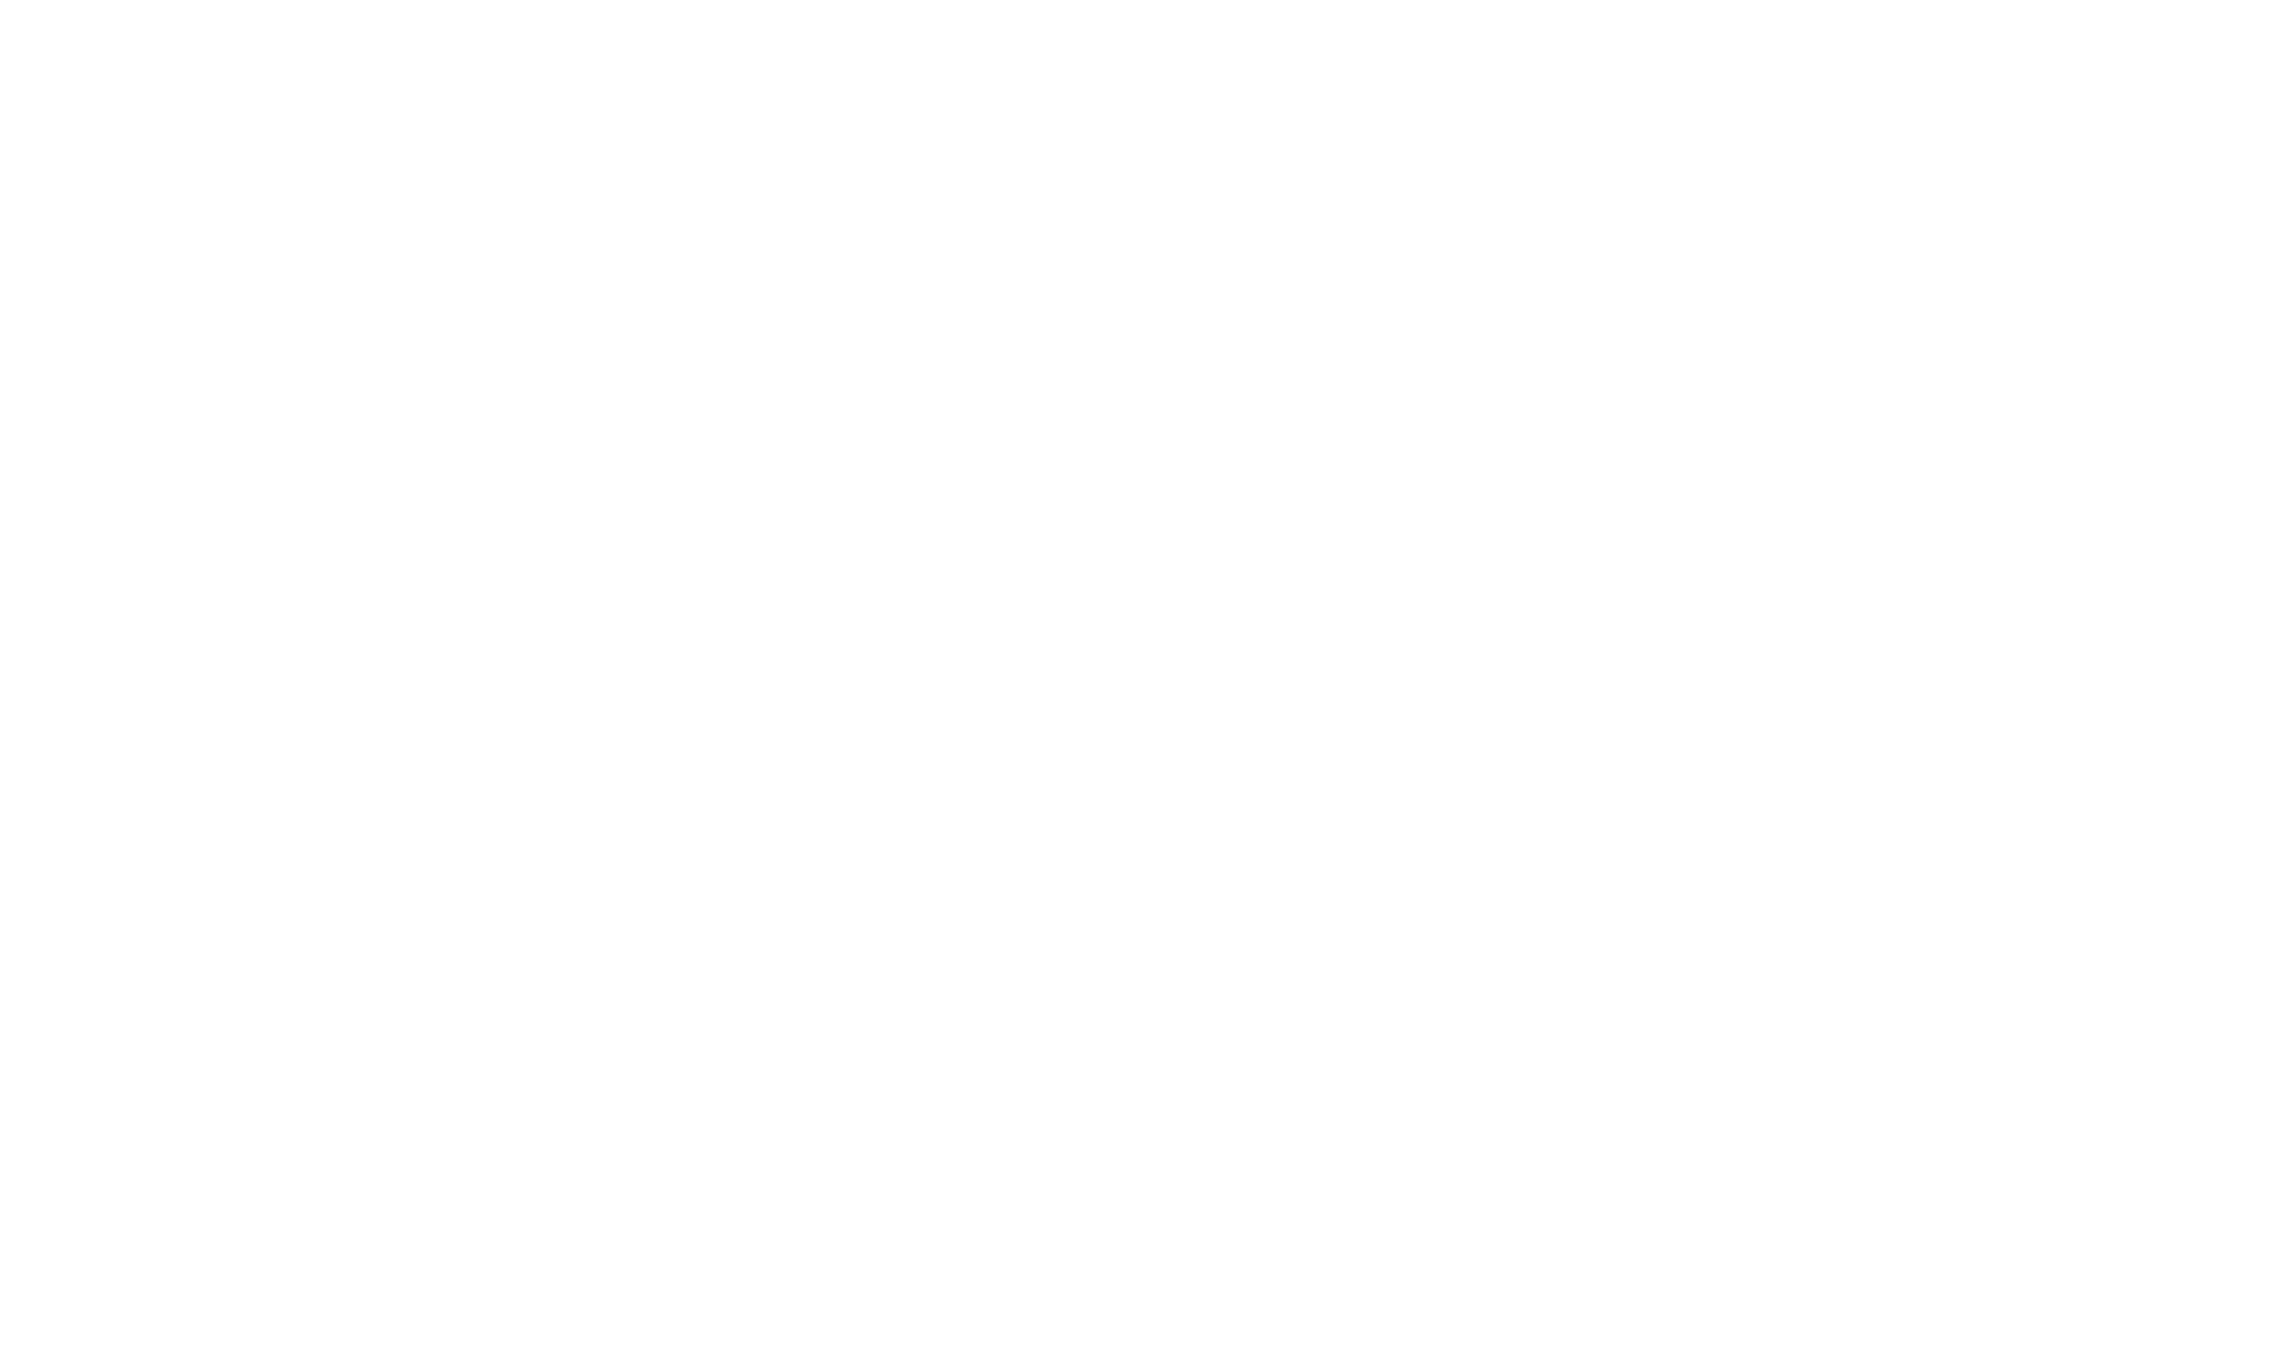 Pencil or Ink